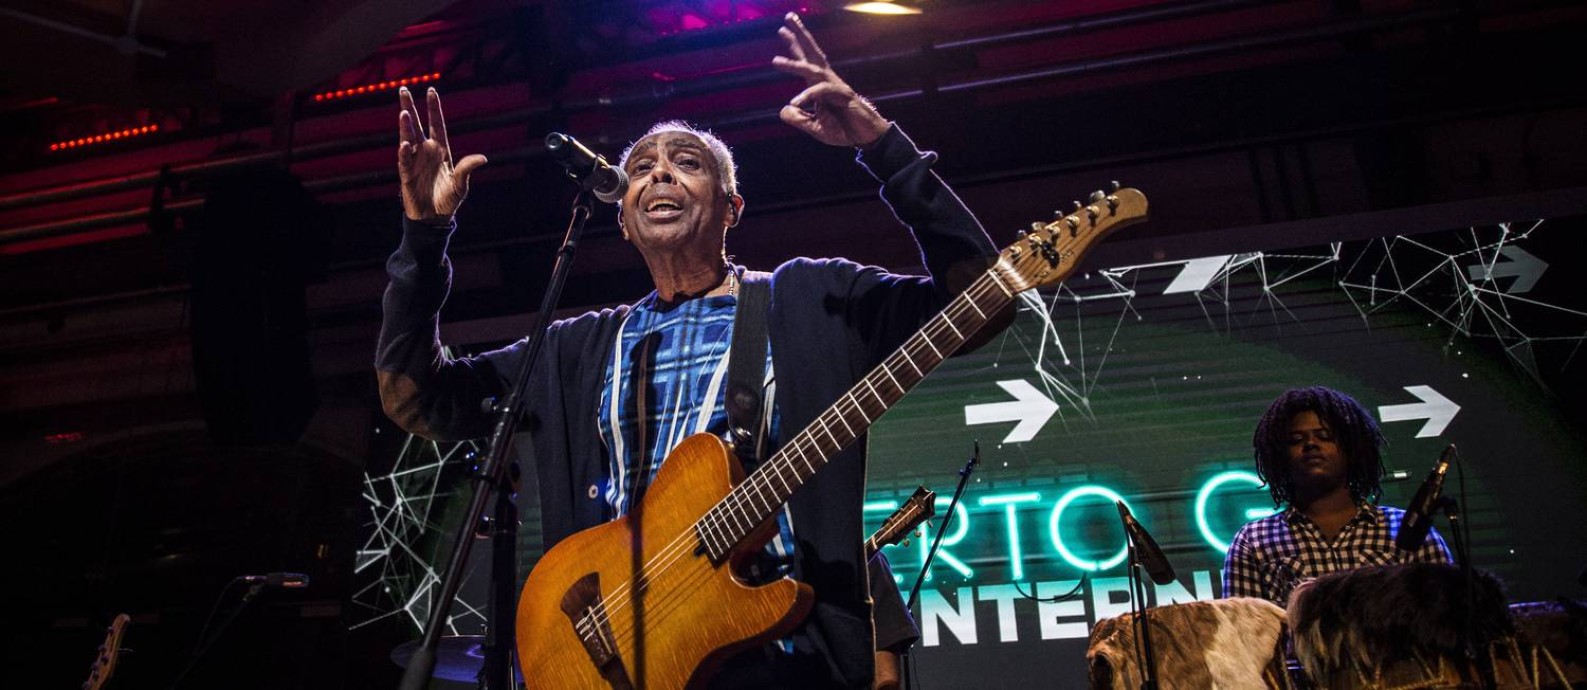 O cantor e compositor Gilberto Gil lança no Espaço YouTube uma nova versão da música "Pela internet" Foto: Guito Moreto / Agência O Globo